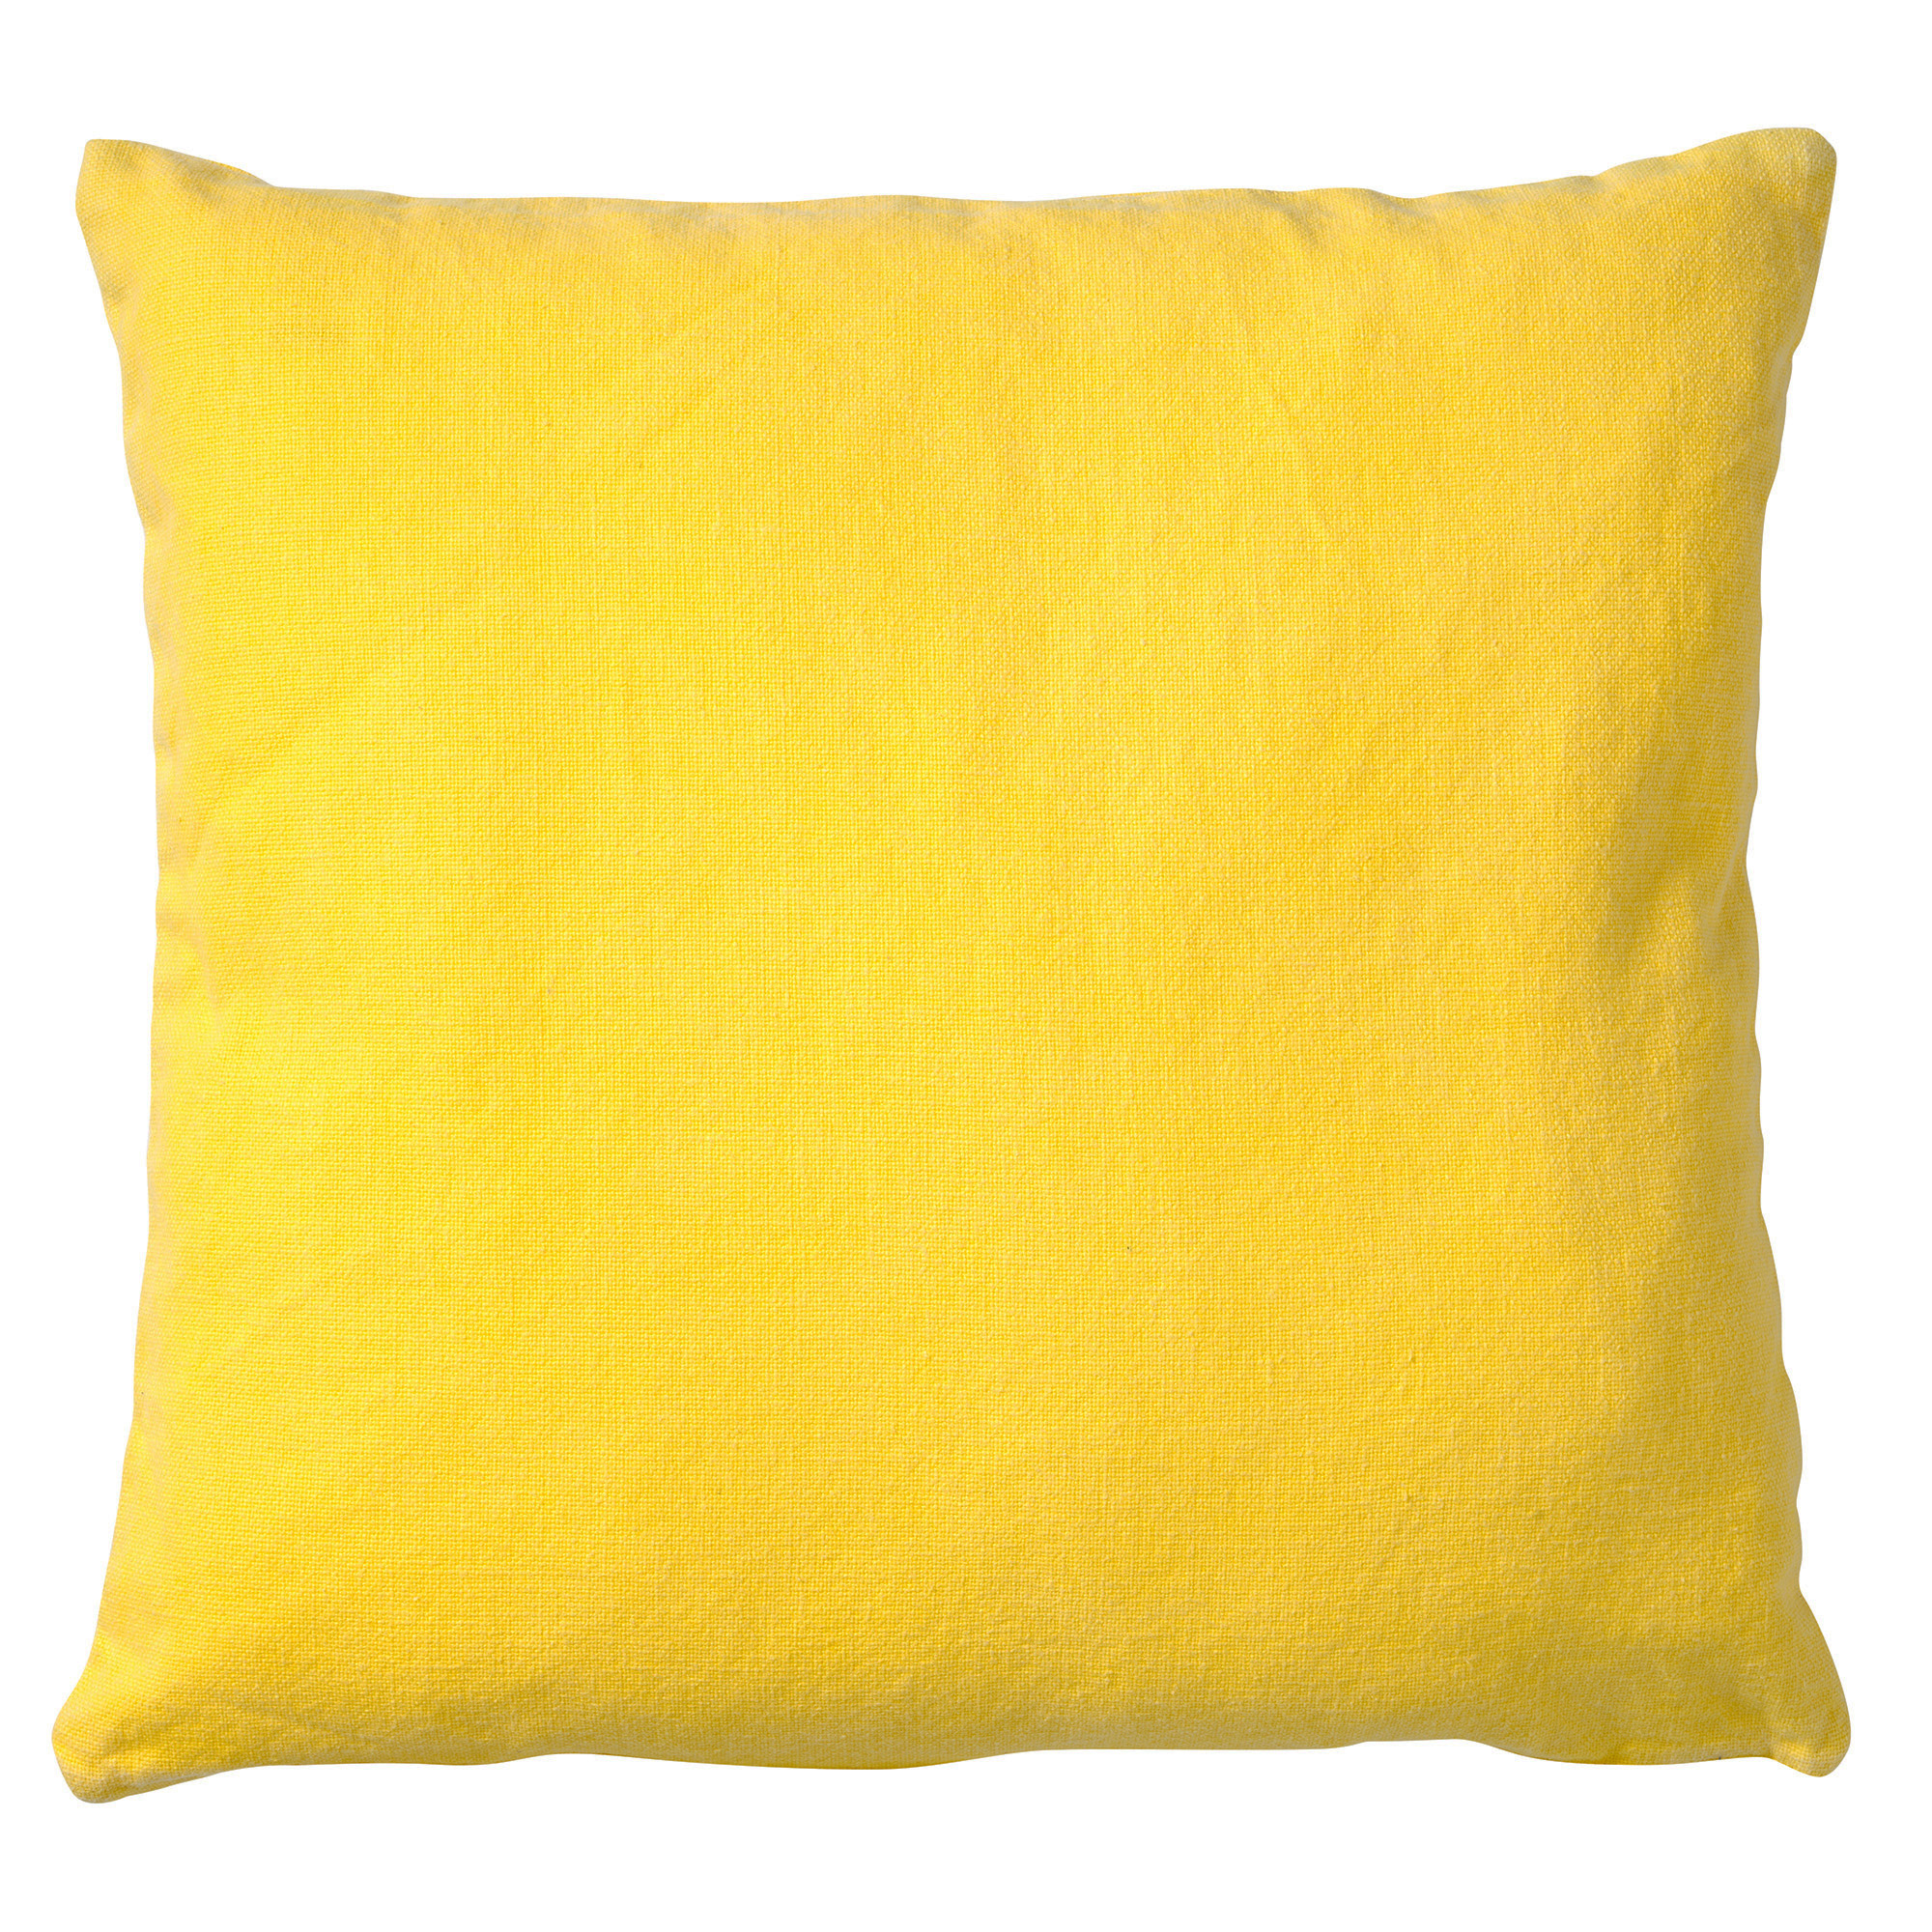 produceren Kapel Oxideren ANNA - Kussenhoes geel van gewassen katoen 50x50 cm | KUSSENHOES |  KHANNA50GEE